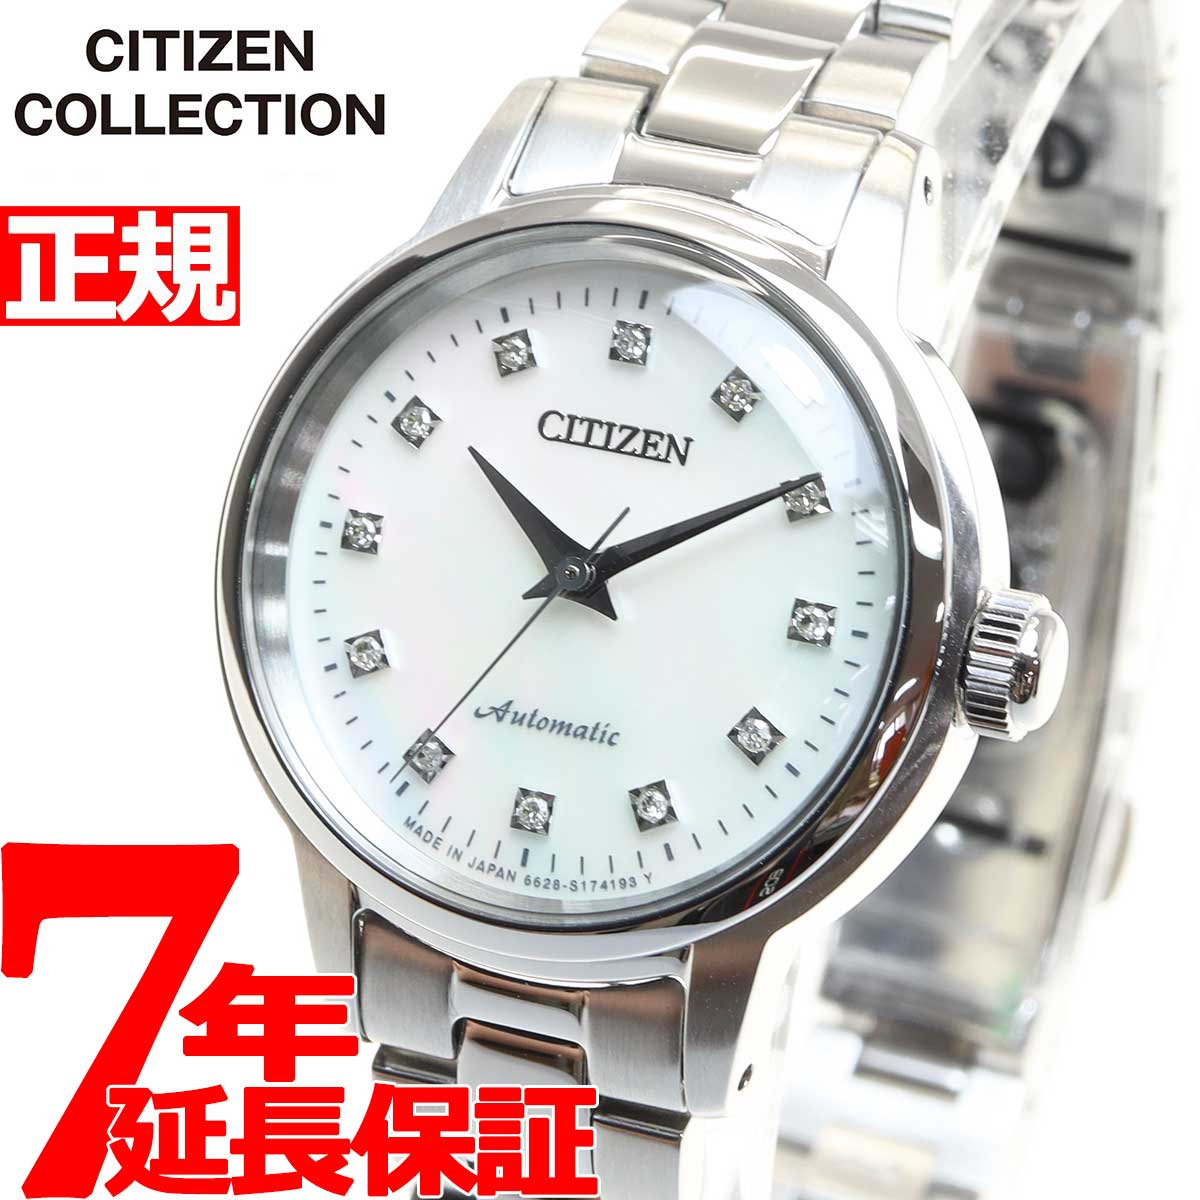 シチズンコレクション CITIZEN COLLECTION メカニカル 自動巻き 機械式 腕時計 レディース PR1030-57D